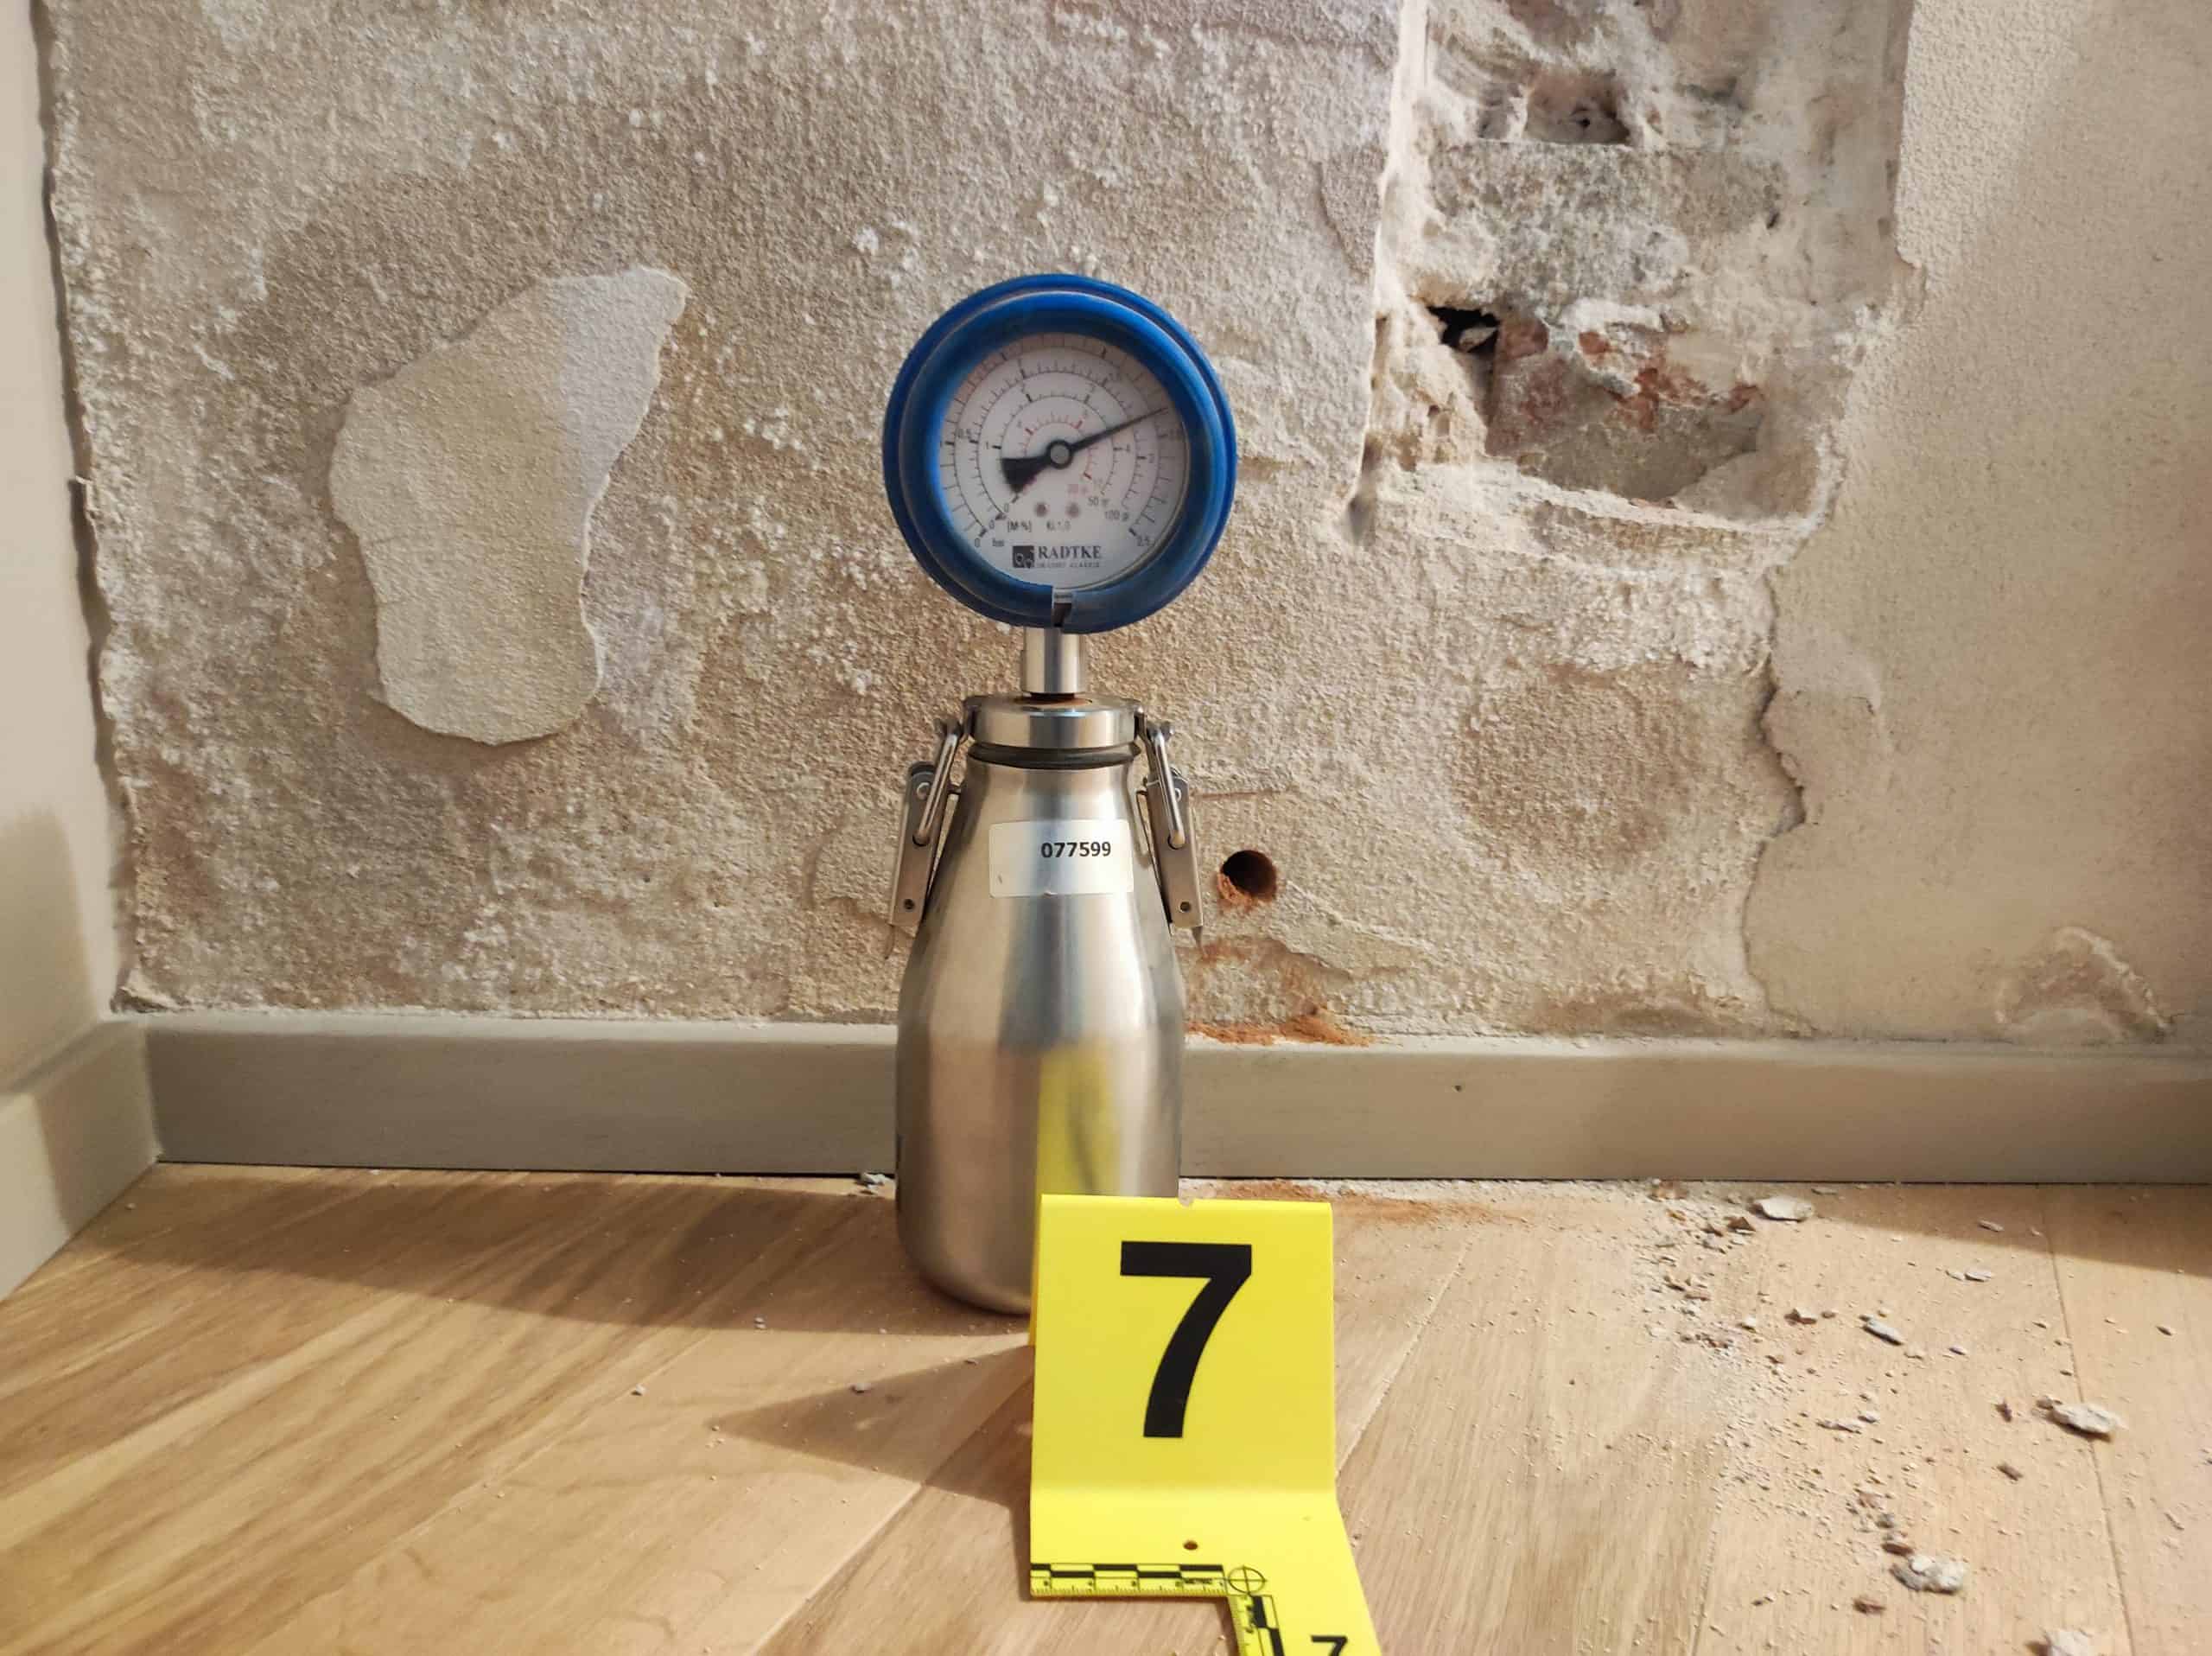 Misurare l'umidità nei muri, quale igrometro utilizzare? - Daniele